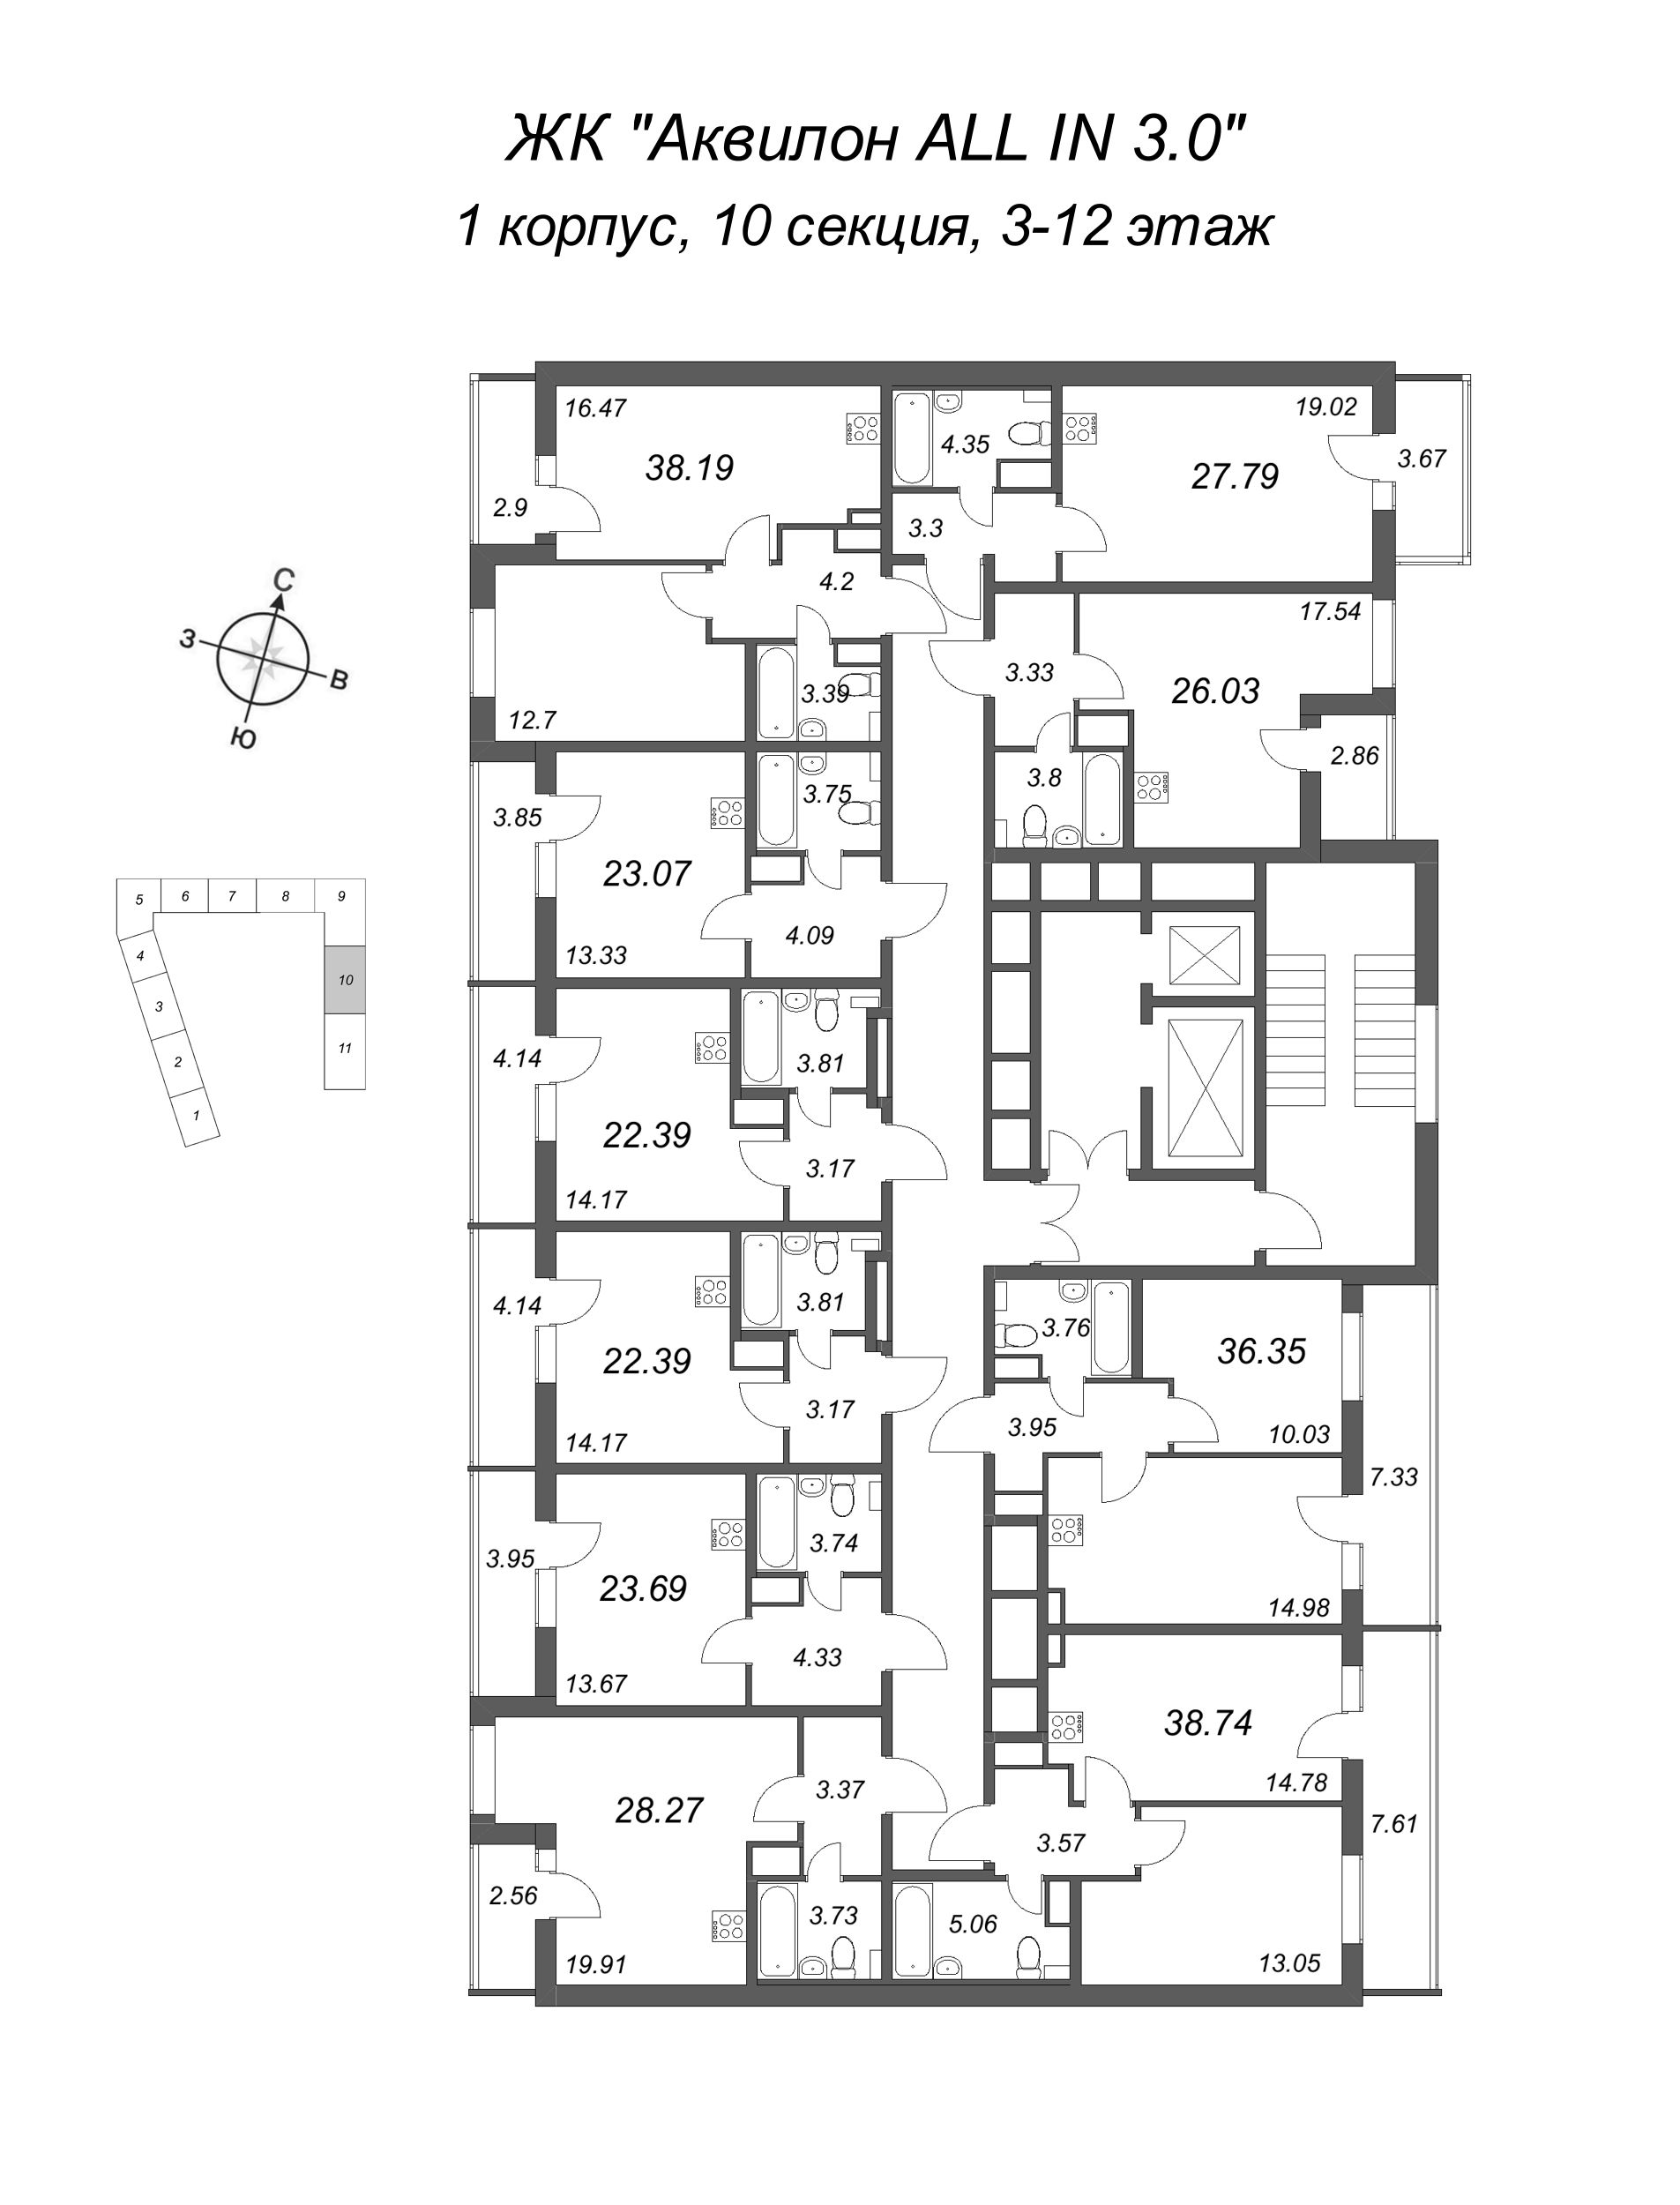 Квартира-студия, 23.69 м² в ЖК "Аквилон All in 3.0" - планировка этажа